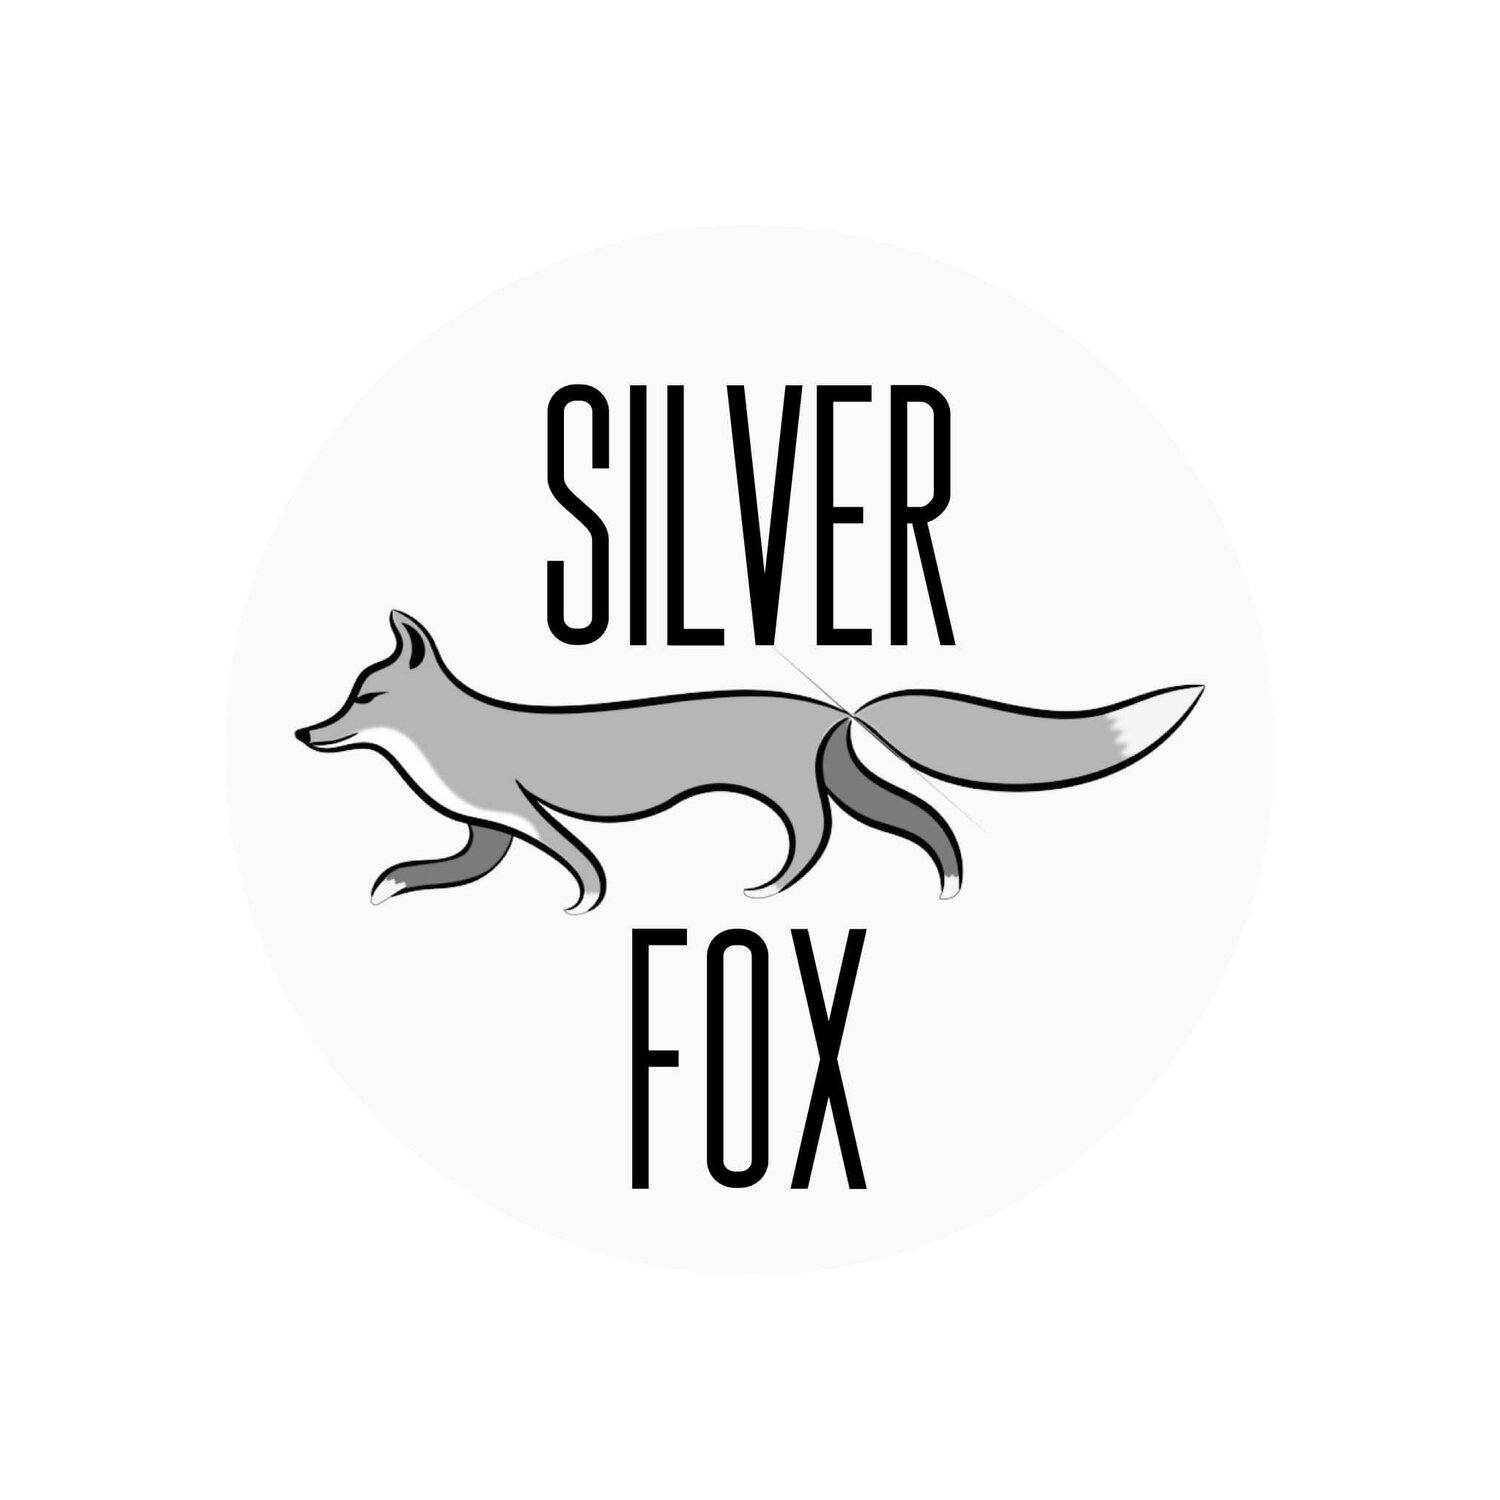 SILVER-FOX AS